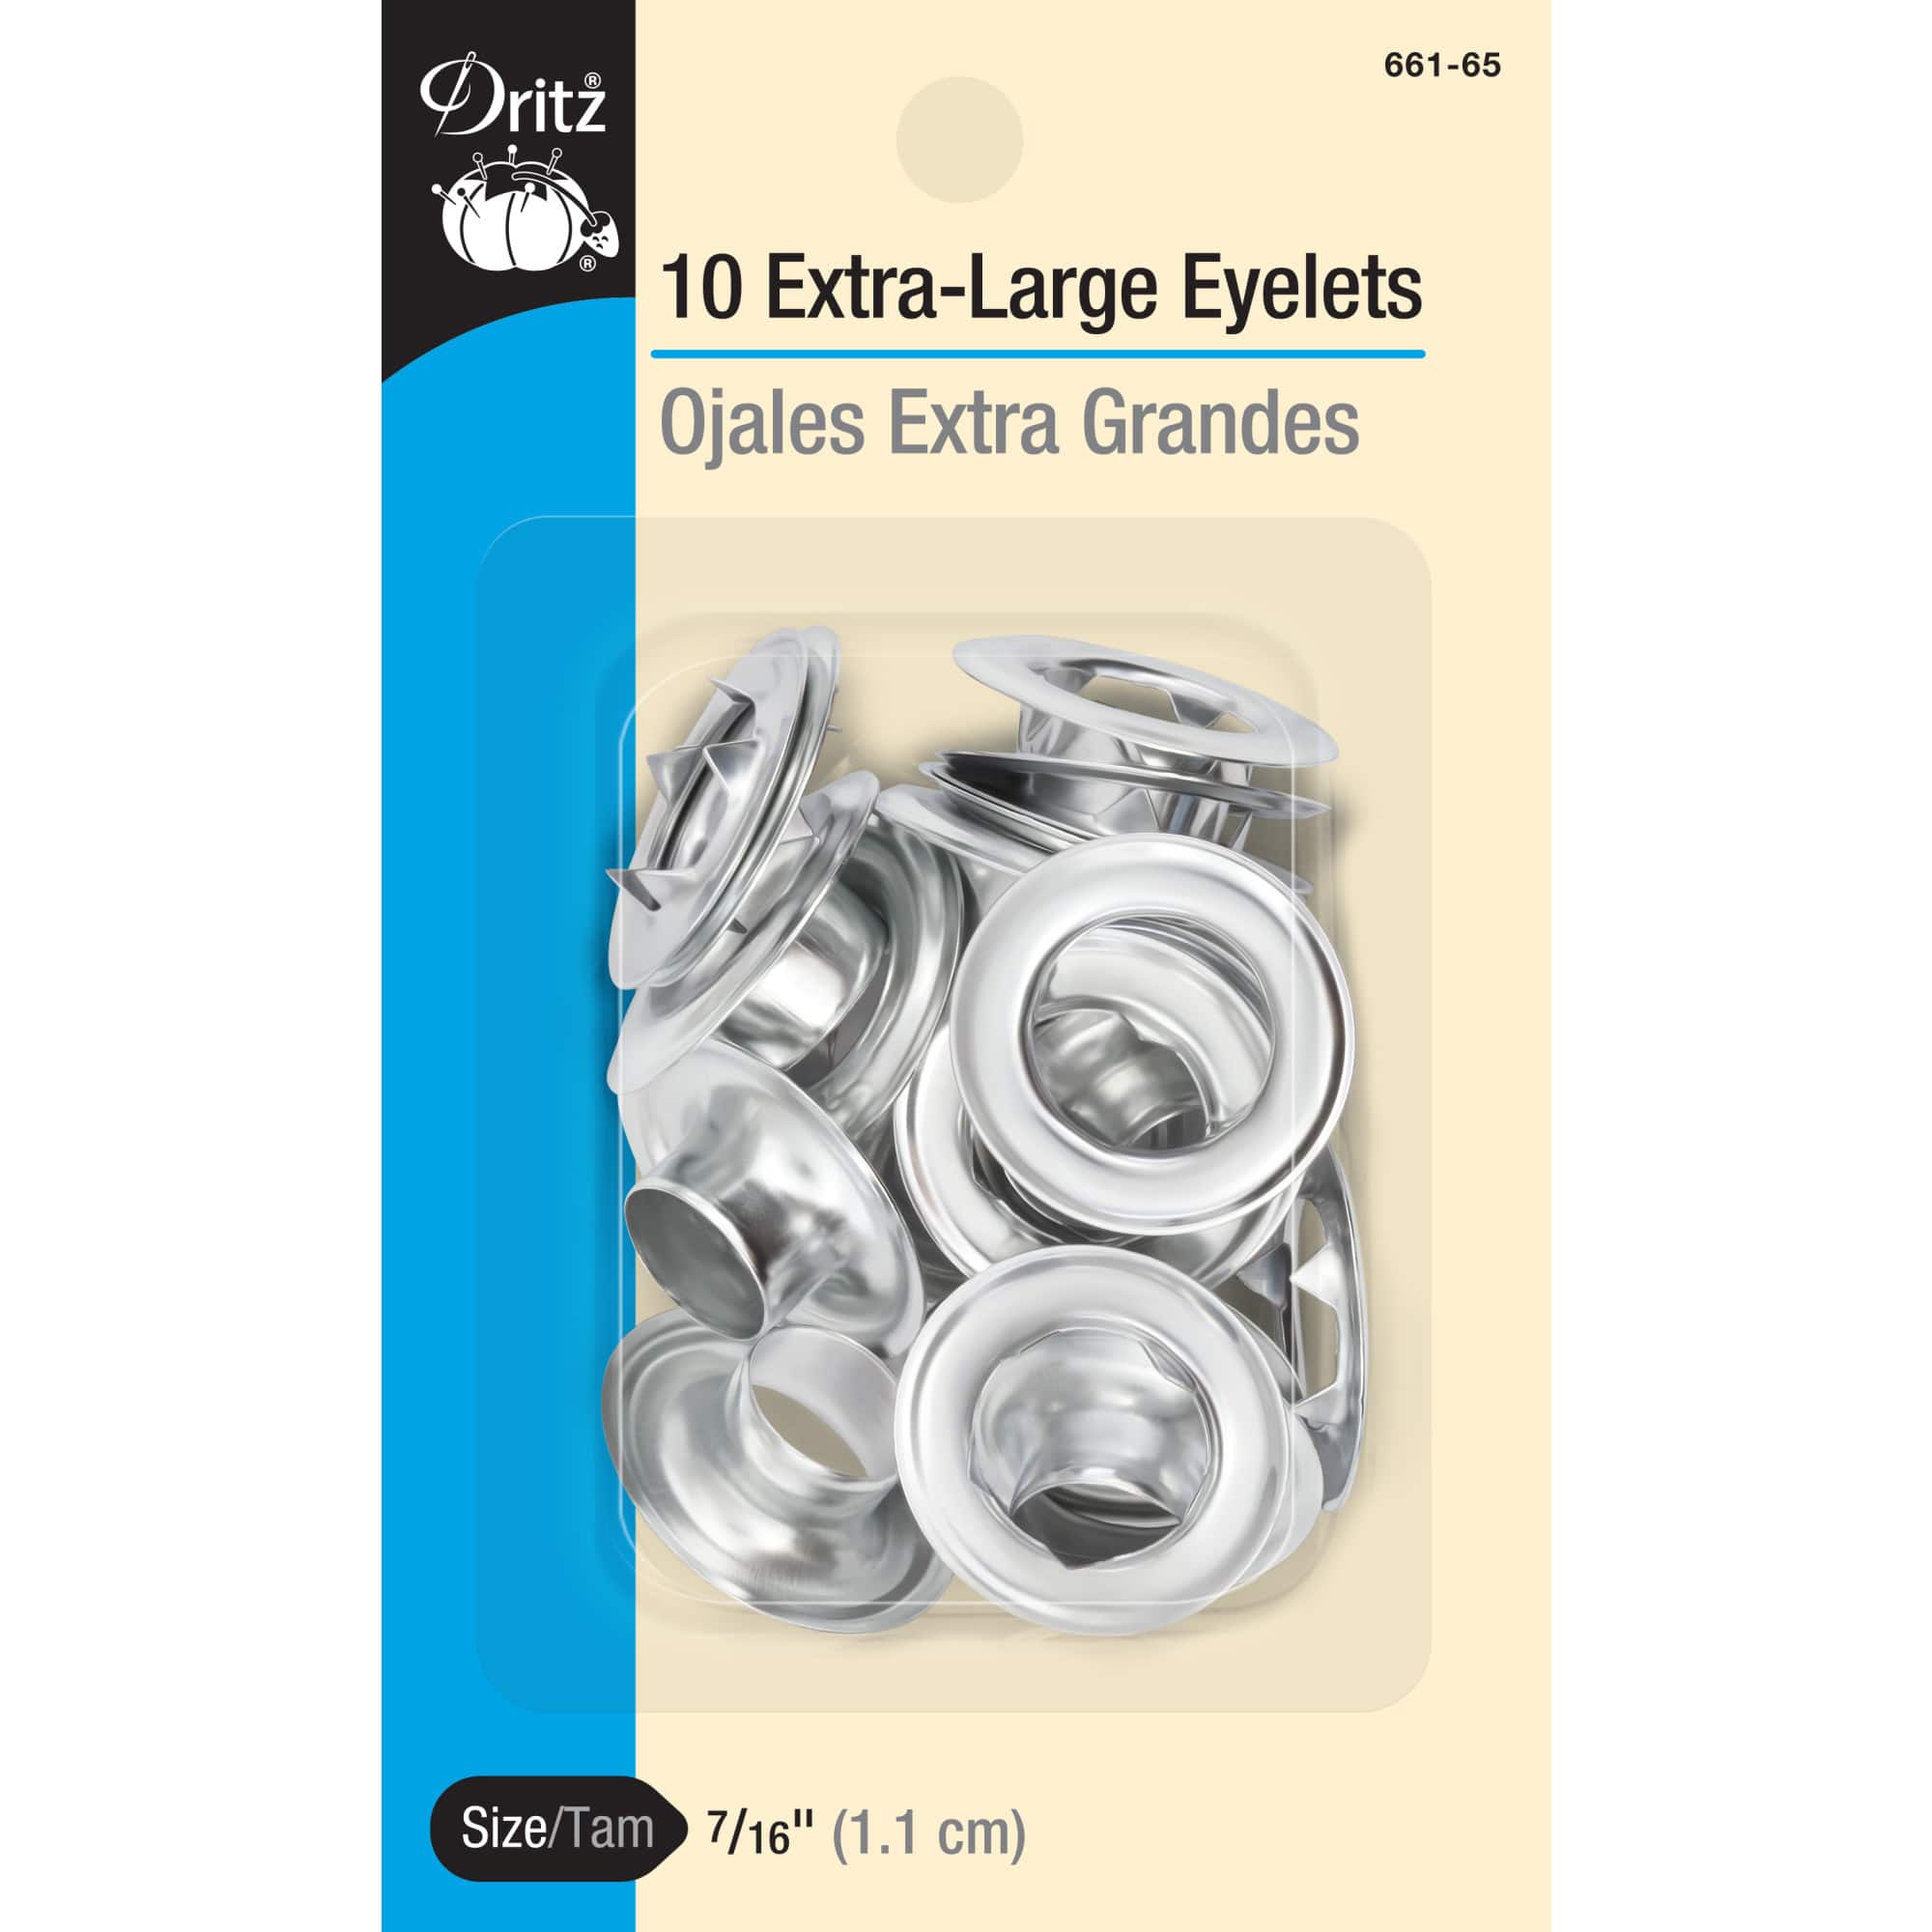 Dritz Extra Large Eyelet Kit - Nickel